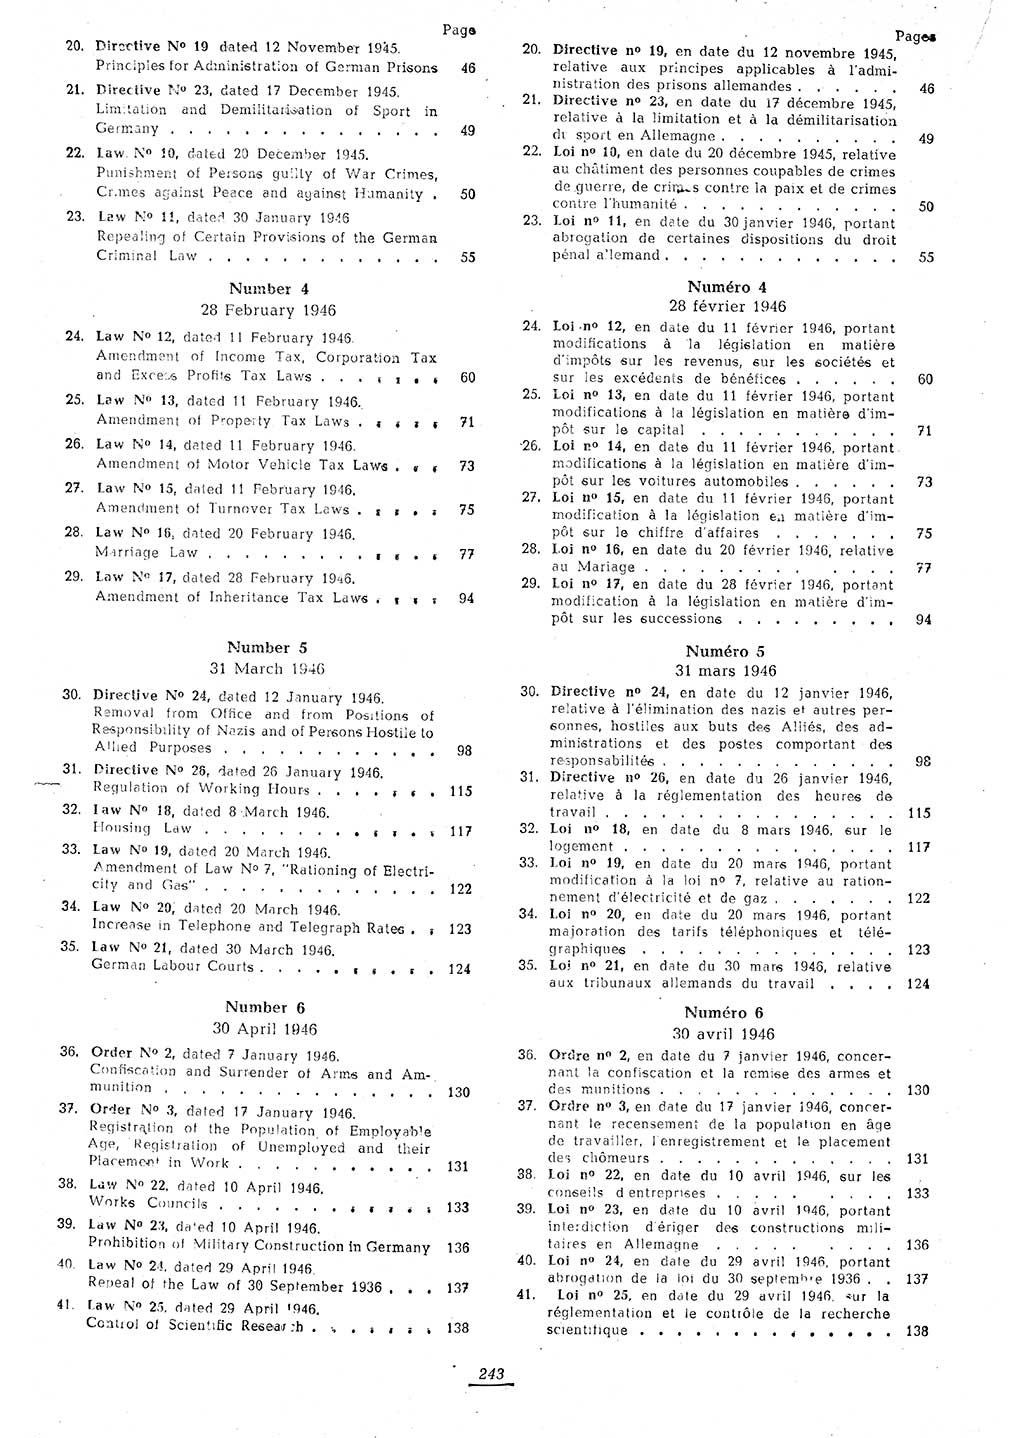 Amtsblatt des Kontrollrats (ABlKR) in Deutschland 1946, Seite 243/1 (ABlKR Dtl. 1946, S. 243/1)